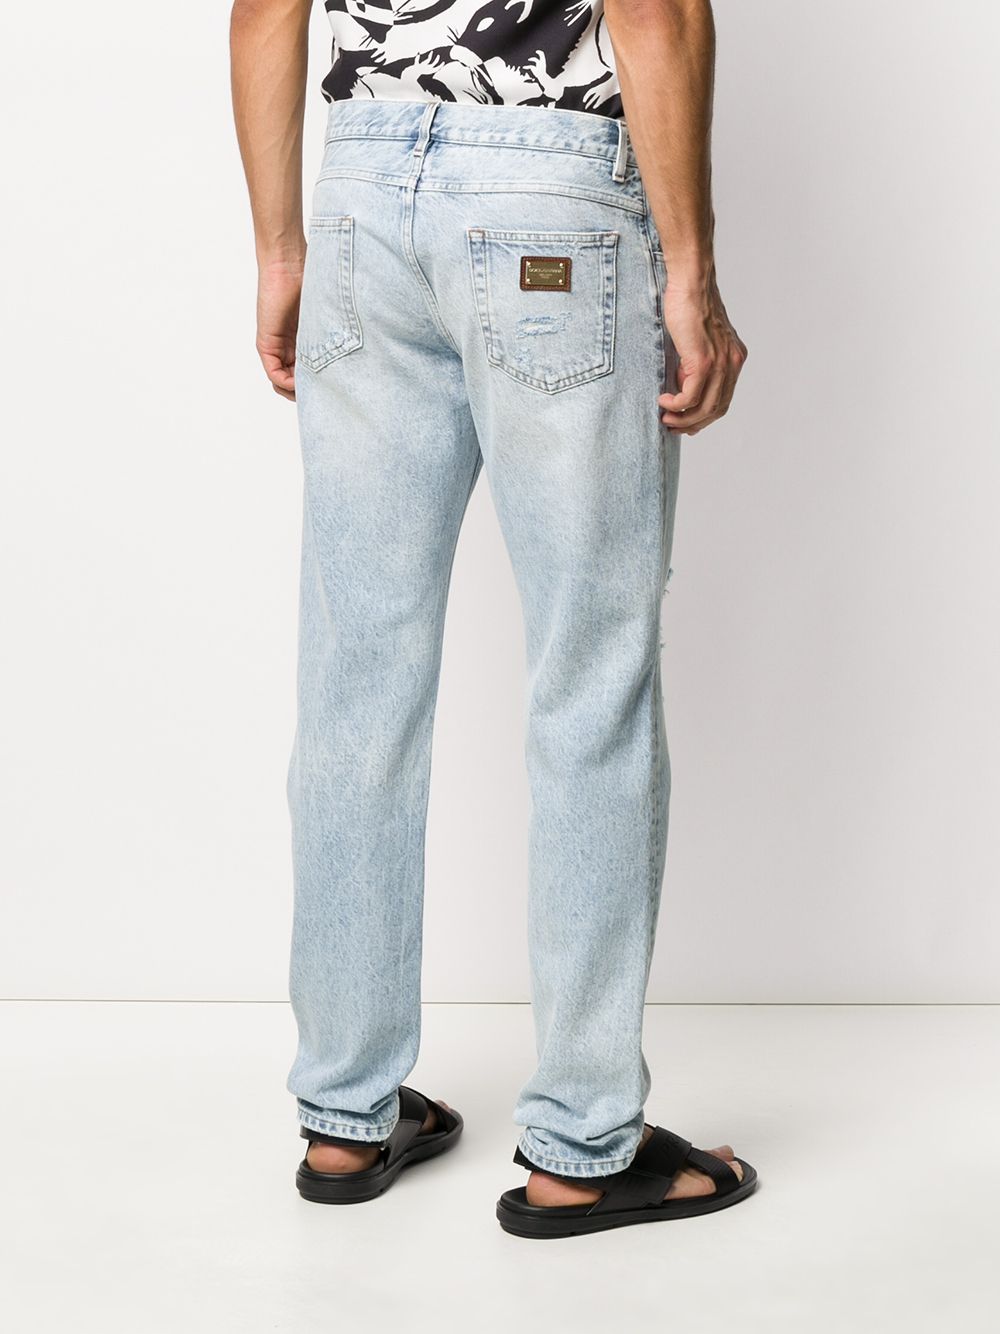 фото Dolce & gabbana джинсы кроя слим с эффектом потертости